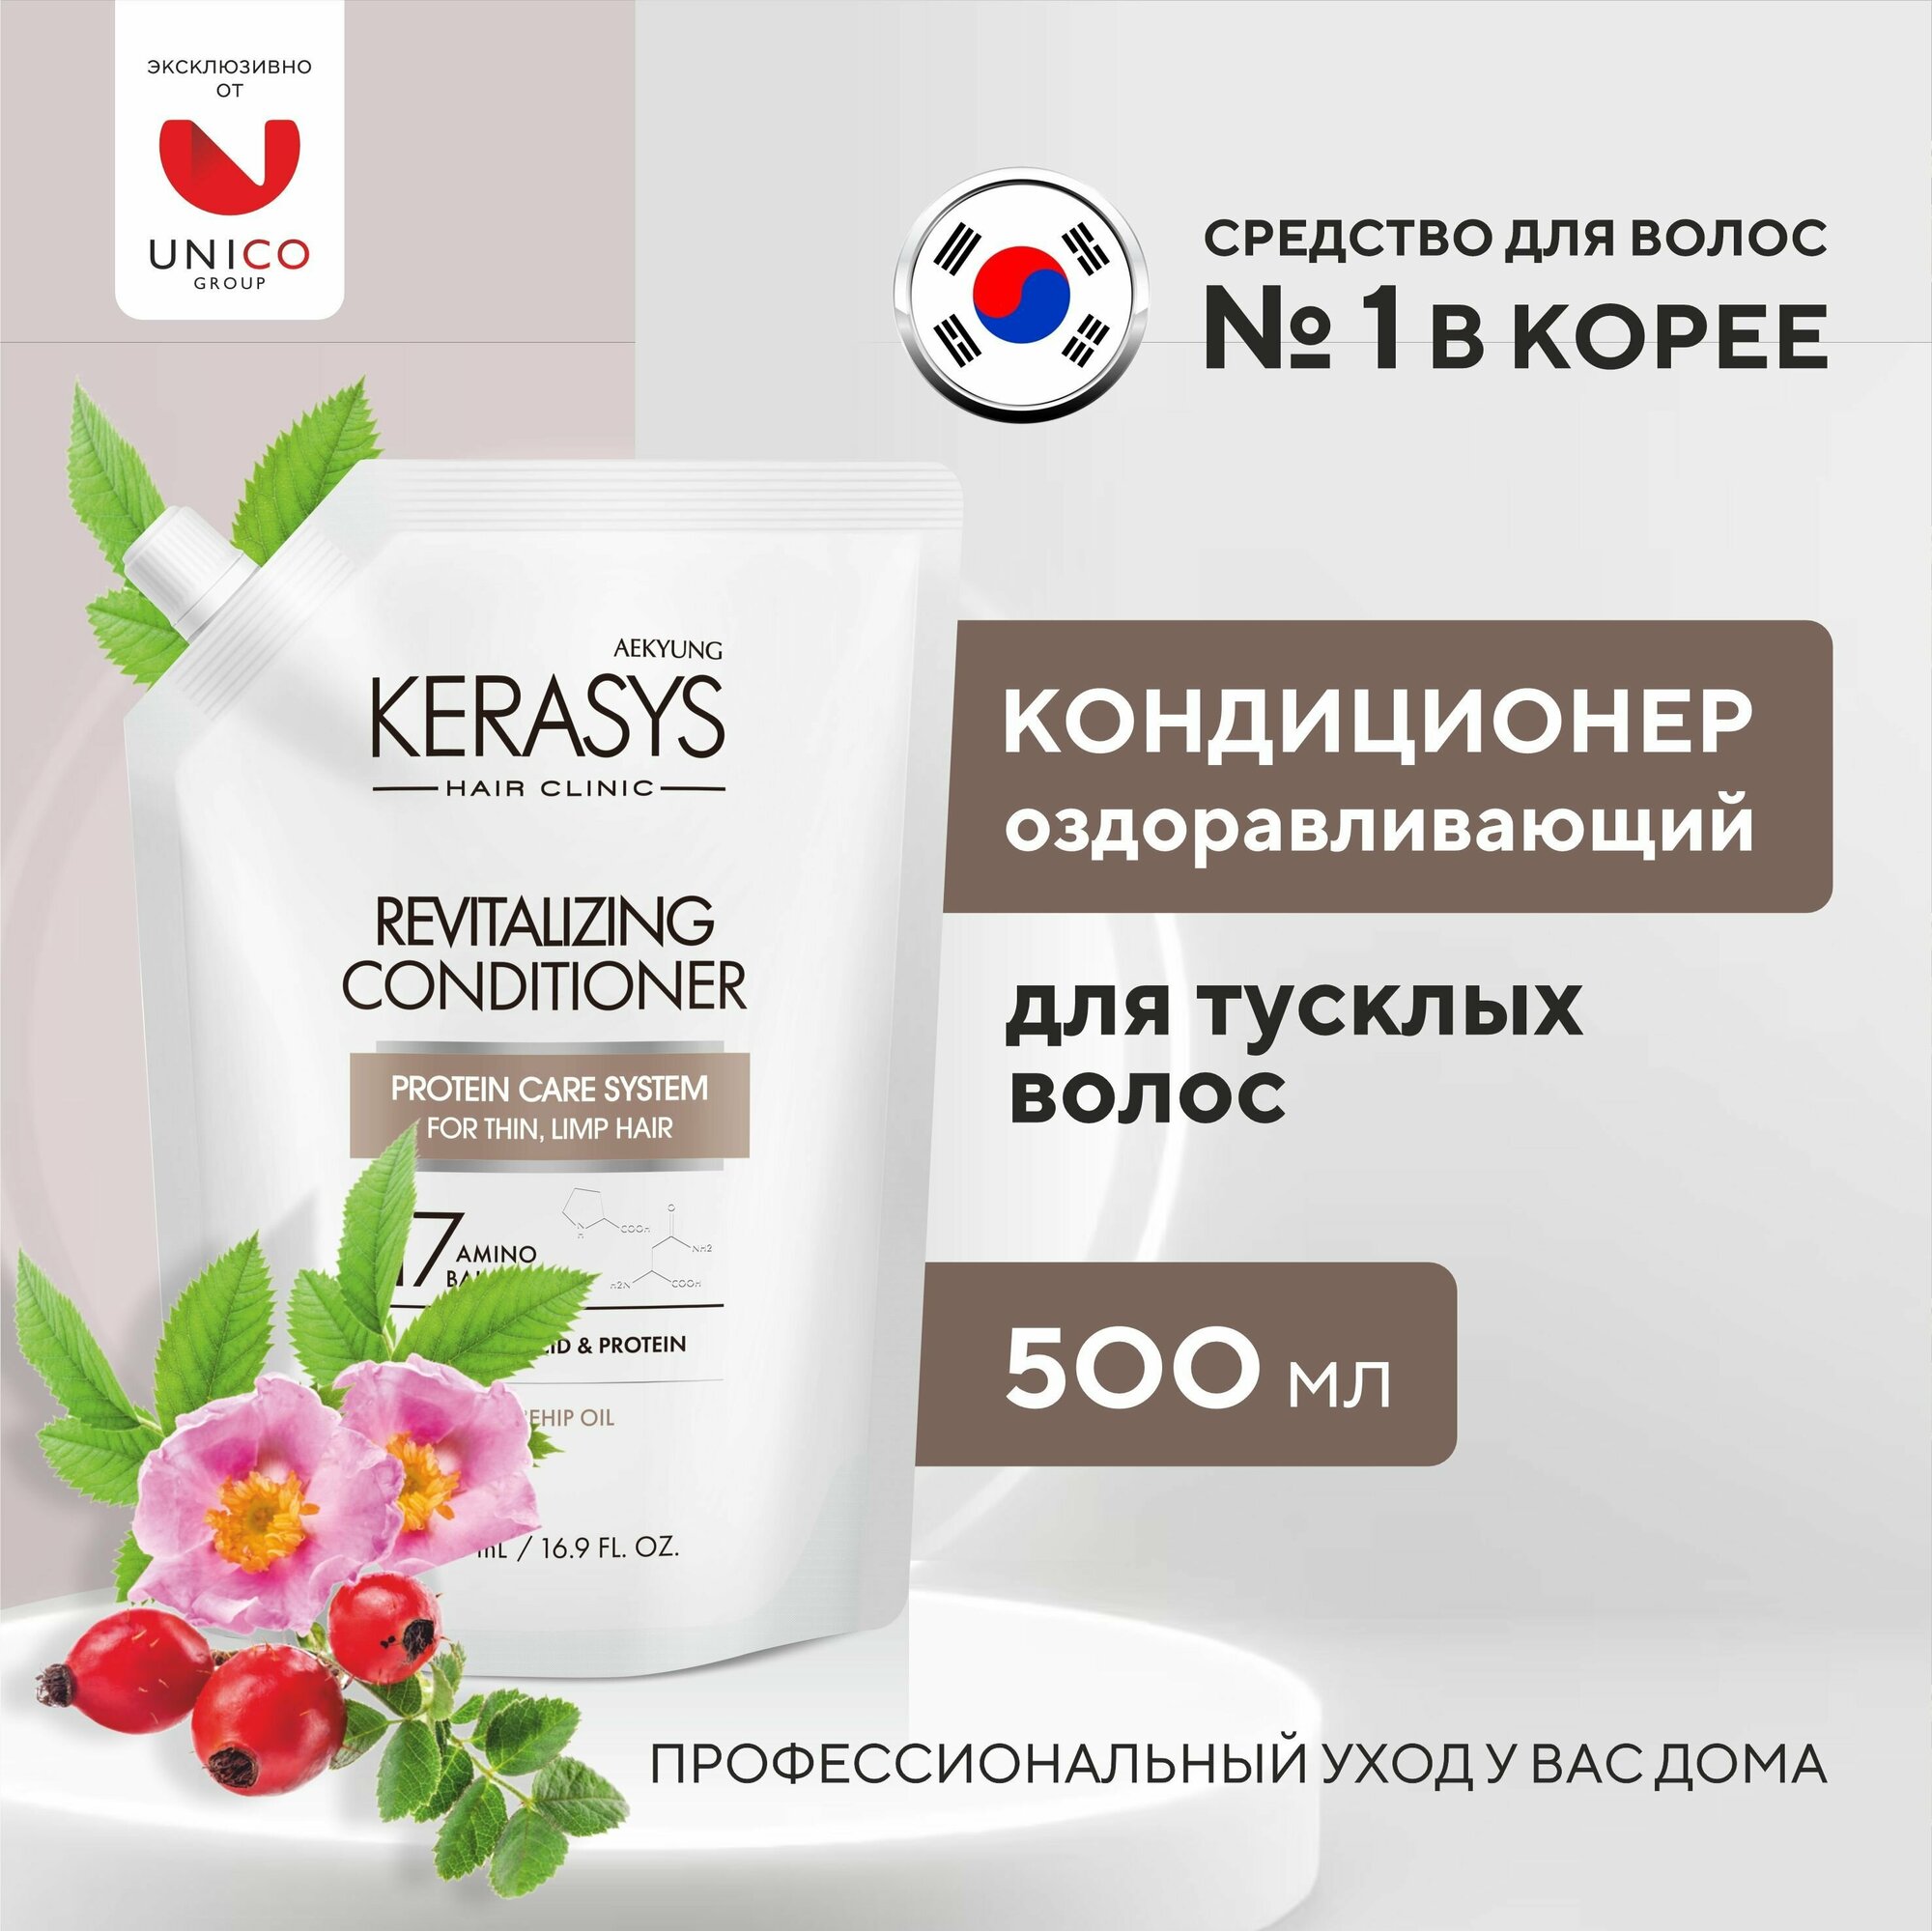 Kerasys Кондиционер для волос оздоравливающий 500 мл сменный блок корейский протеиновый бальзам для тусклых и уставших волос с витаминами, Корея